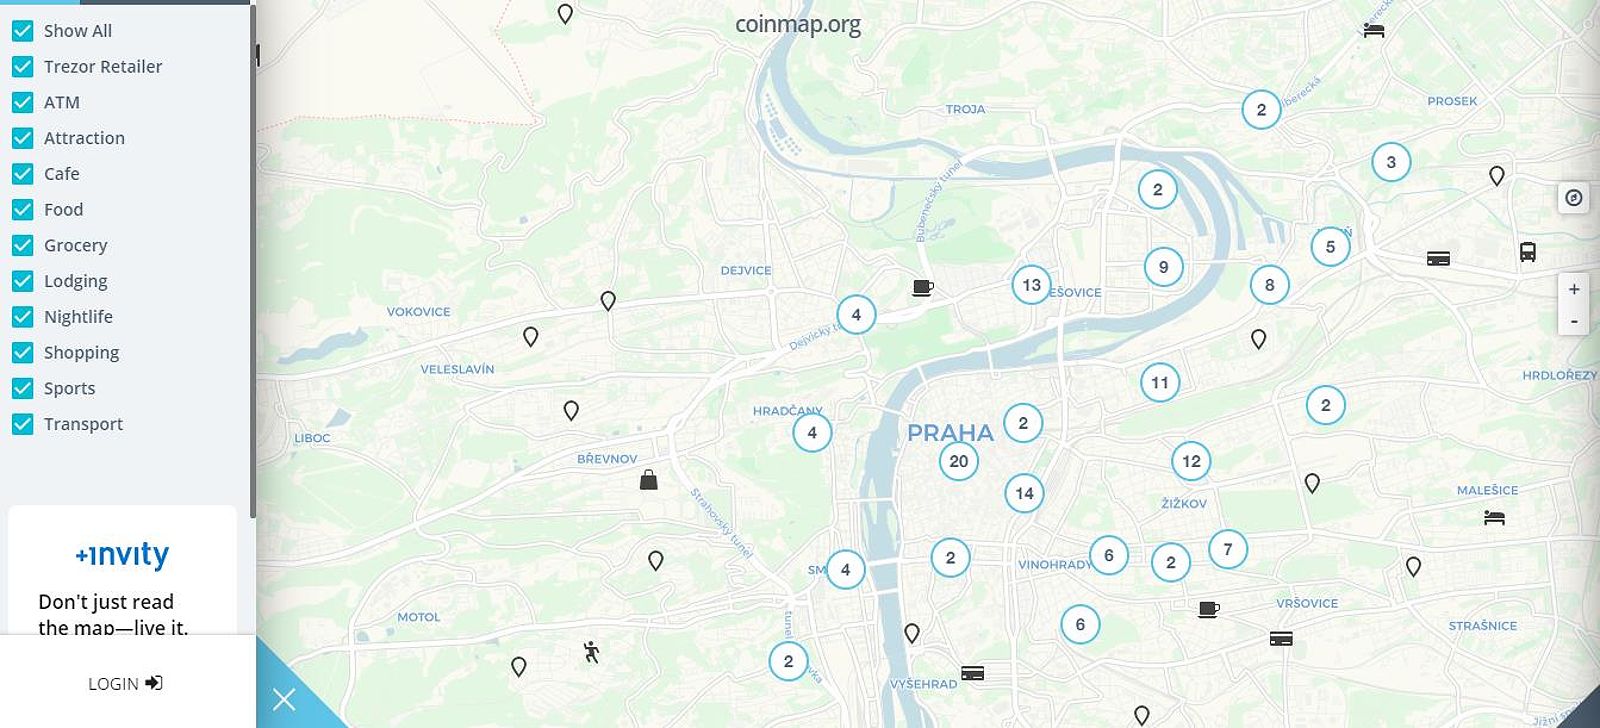 Bản đồ những địa điểm chấp nhận thanh toán bằng Bitcoin